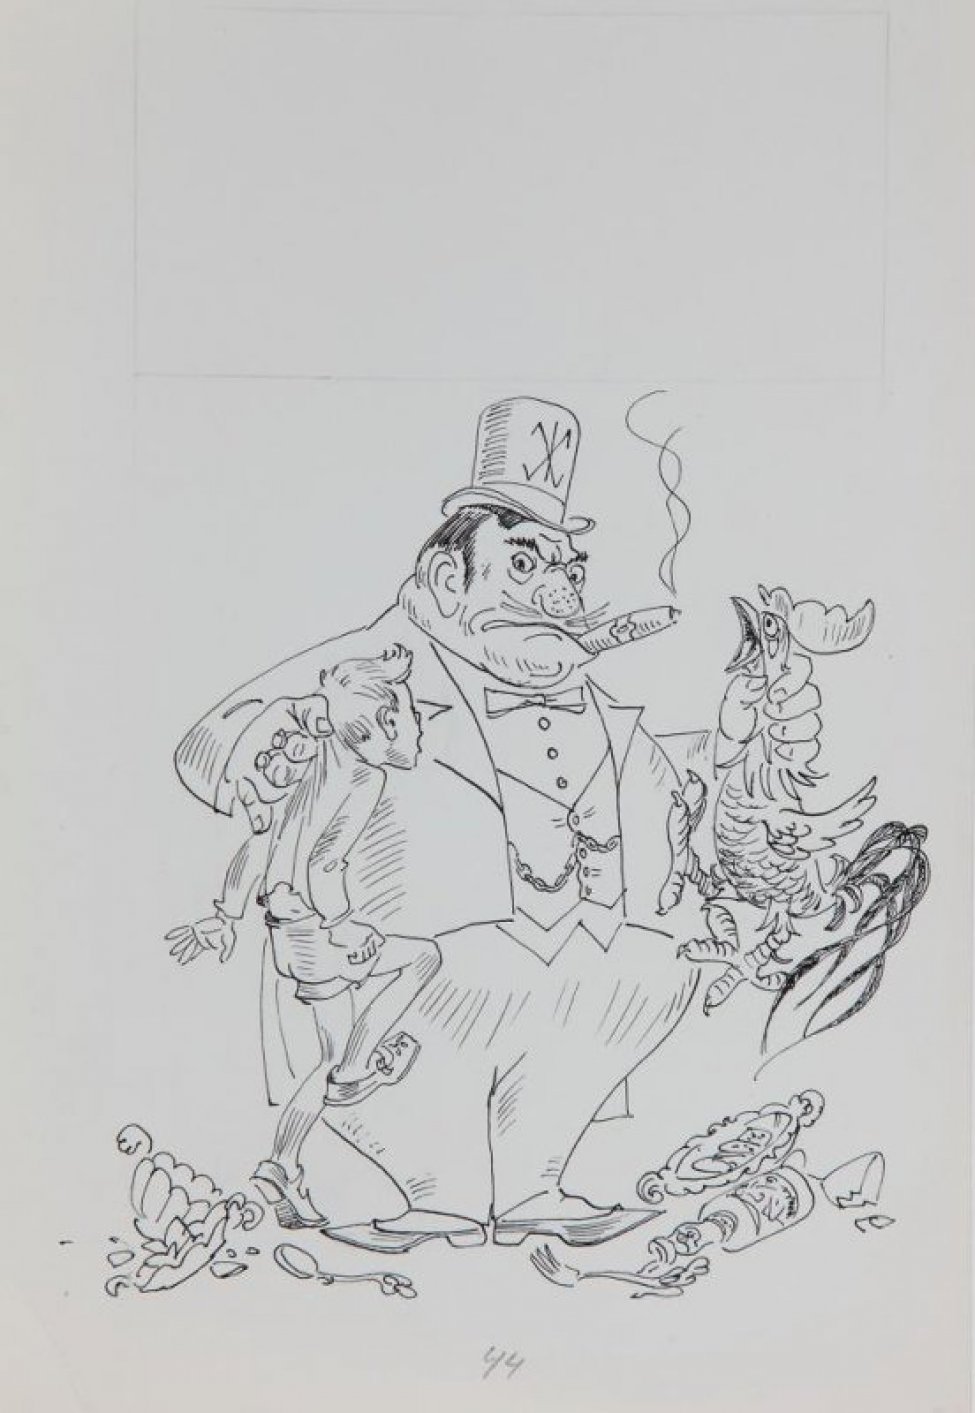 В нижней части листа - стилизованное изображение толстого человека во фраке, цилиндре и с сигарой в зубах; левой рукой он держит за горло петуха, правой рукой держит за шиворот мальчика. В верхней части - разметка карандашом.